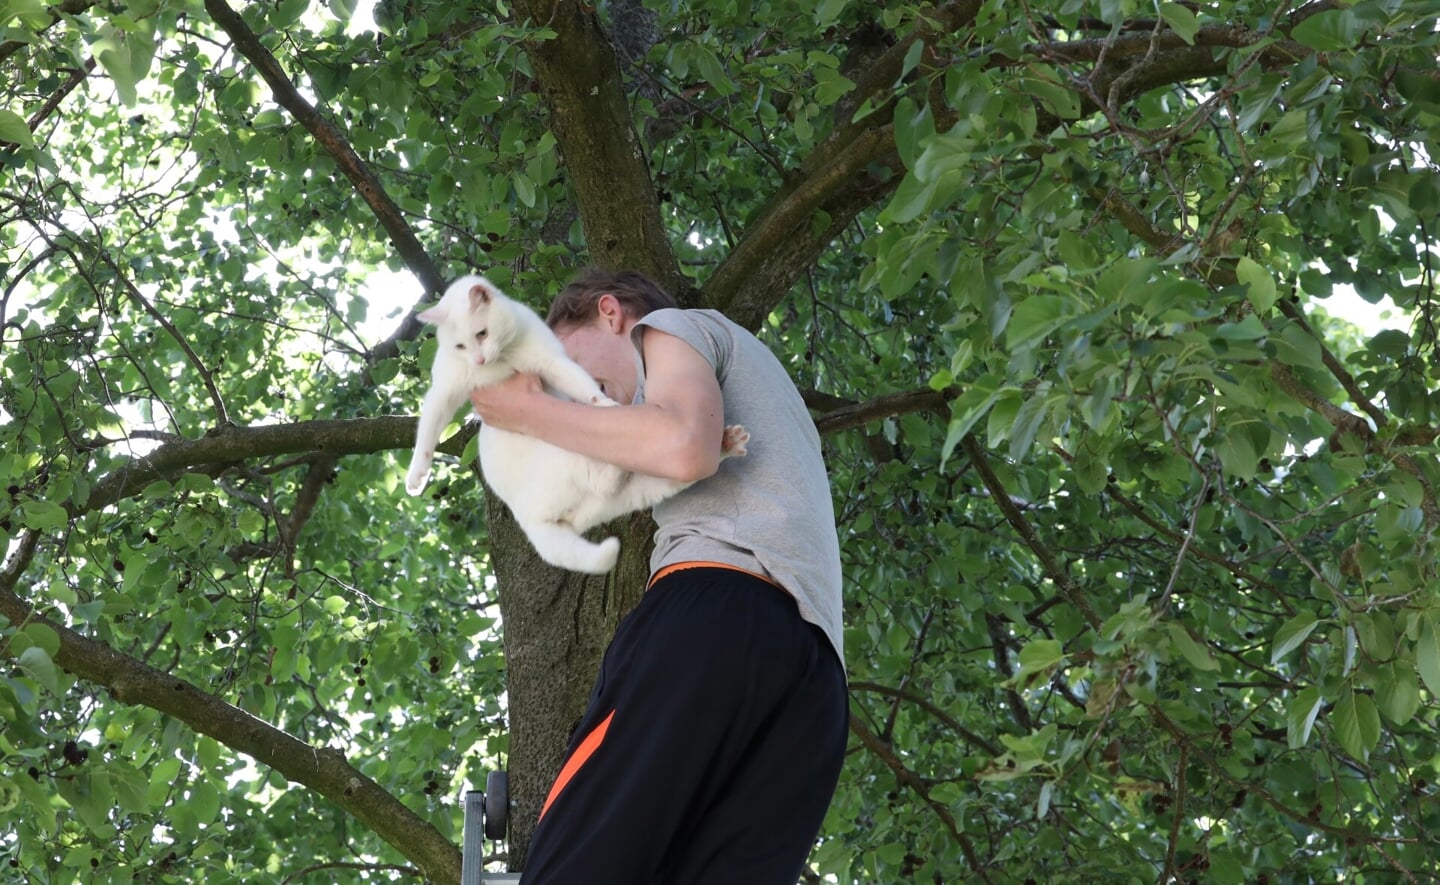 Via een brandweerladder wist het baasje van Witje zijn kat uit de boom in de Elzengaard te halen.